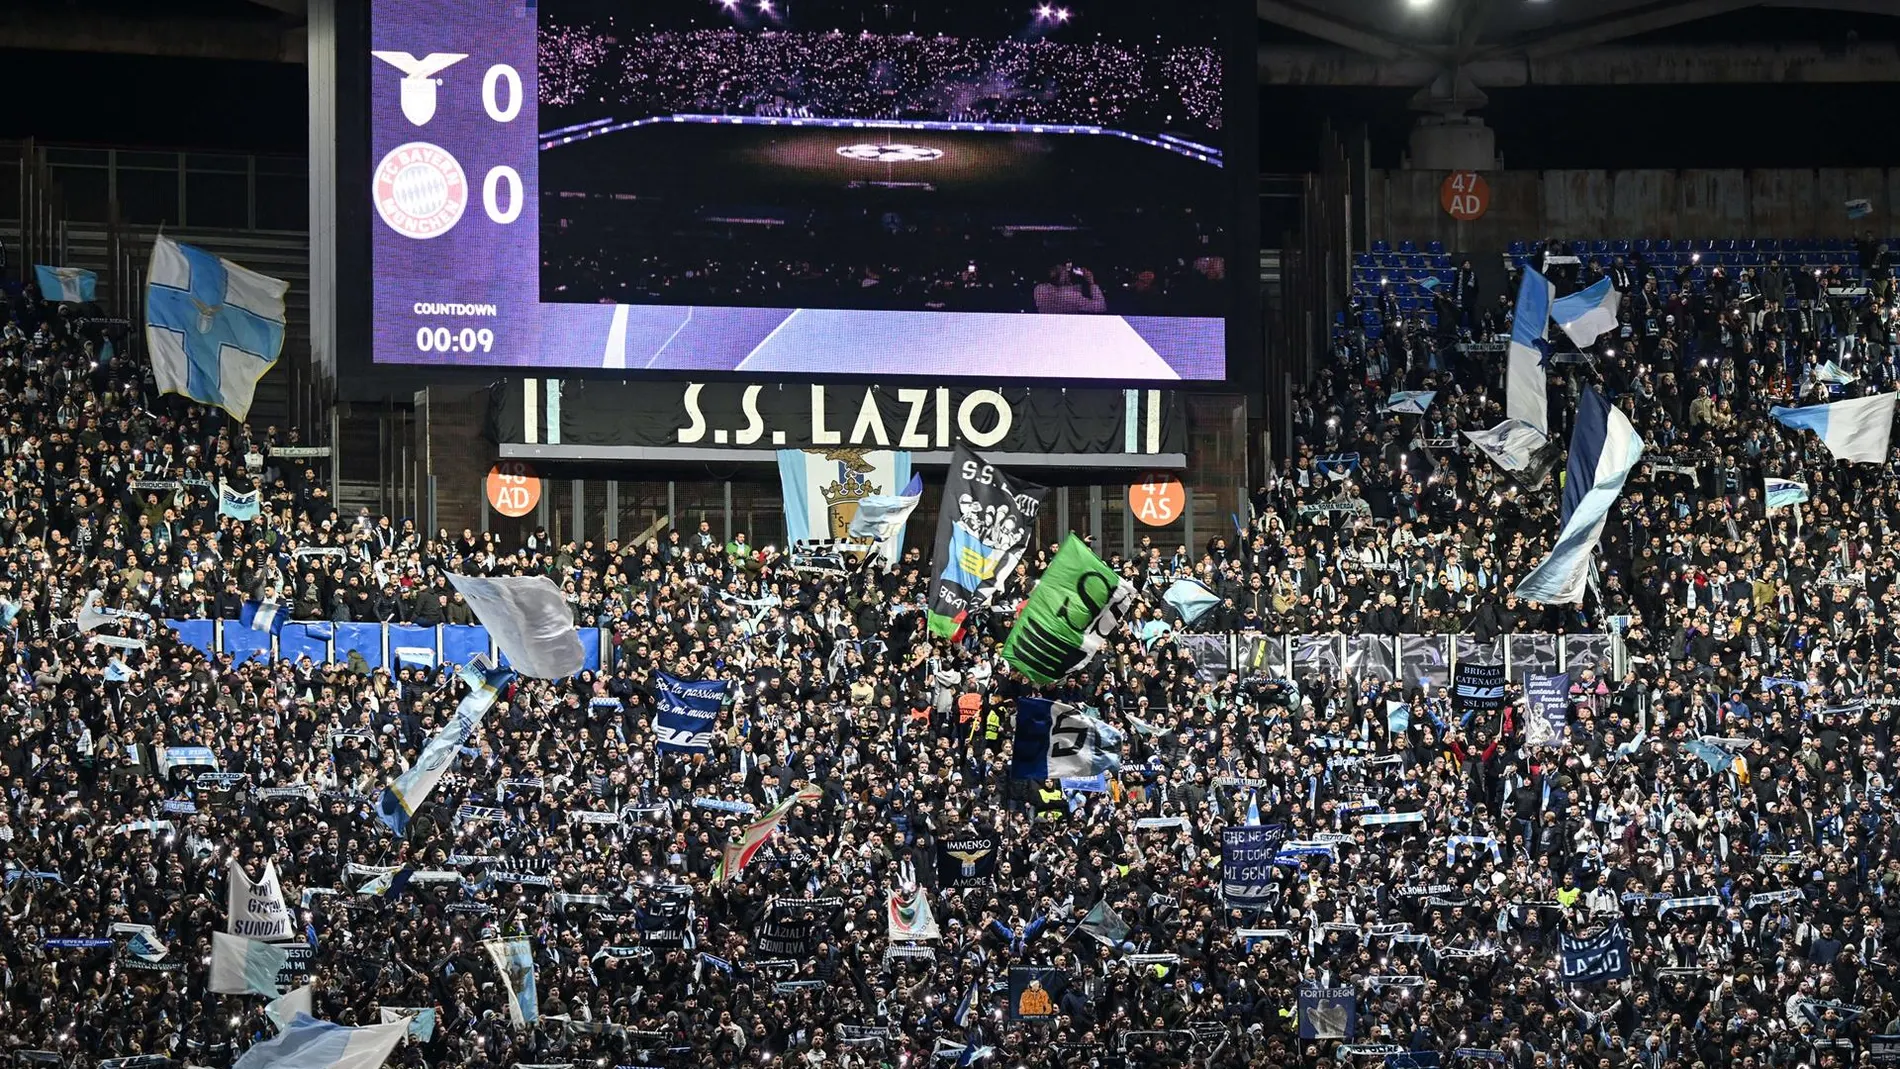 Los ultras del Lazio son conocidos en toda Europa